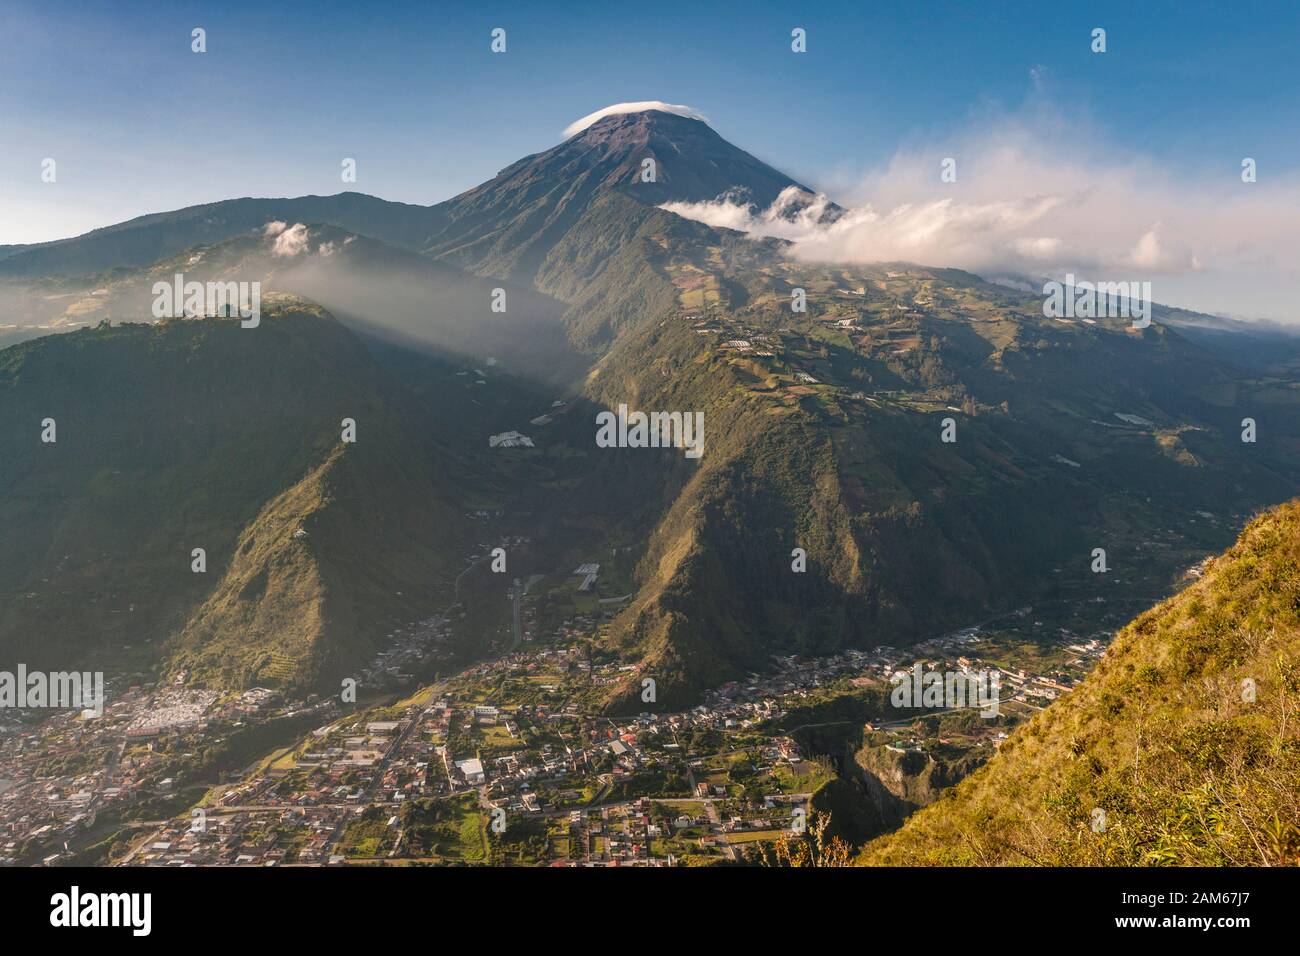 View of the town of Baños de Agua Santa and Tungurahua volcano (5023m) in Ecuador. Stock Photo